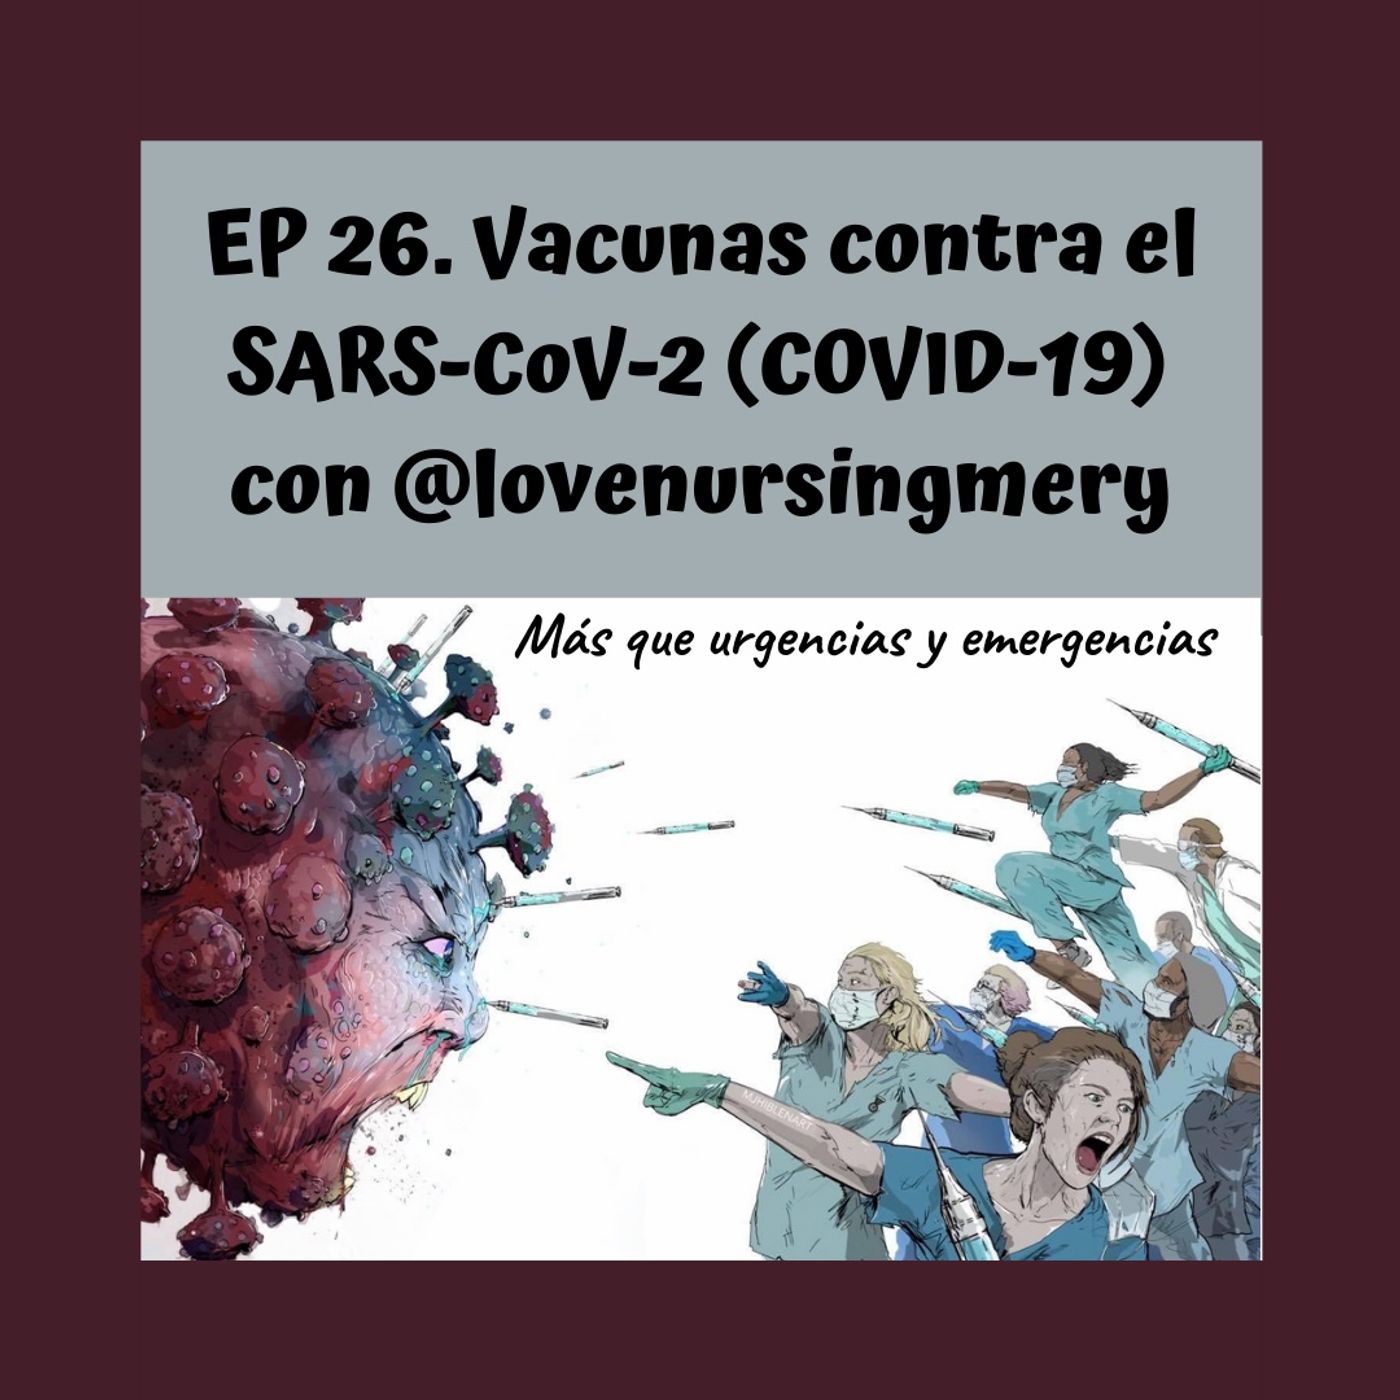 EP26. Vacunas contra el SARS-CoV-2 (COVID-19) con @lovenursingmery